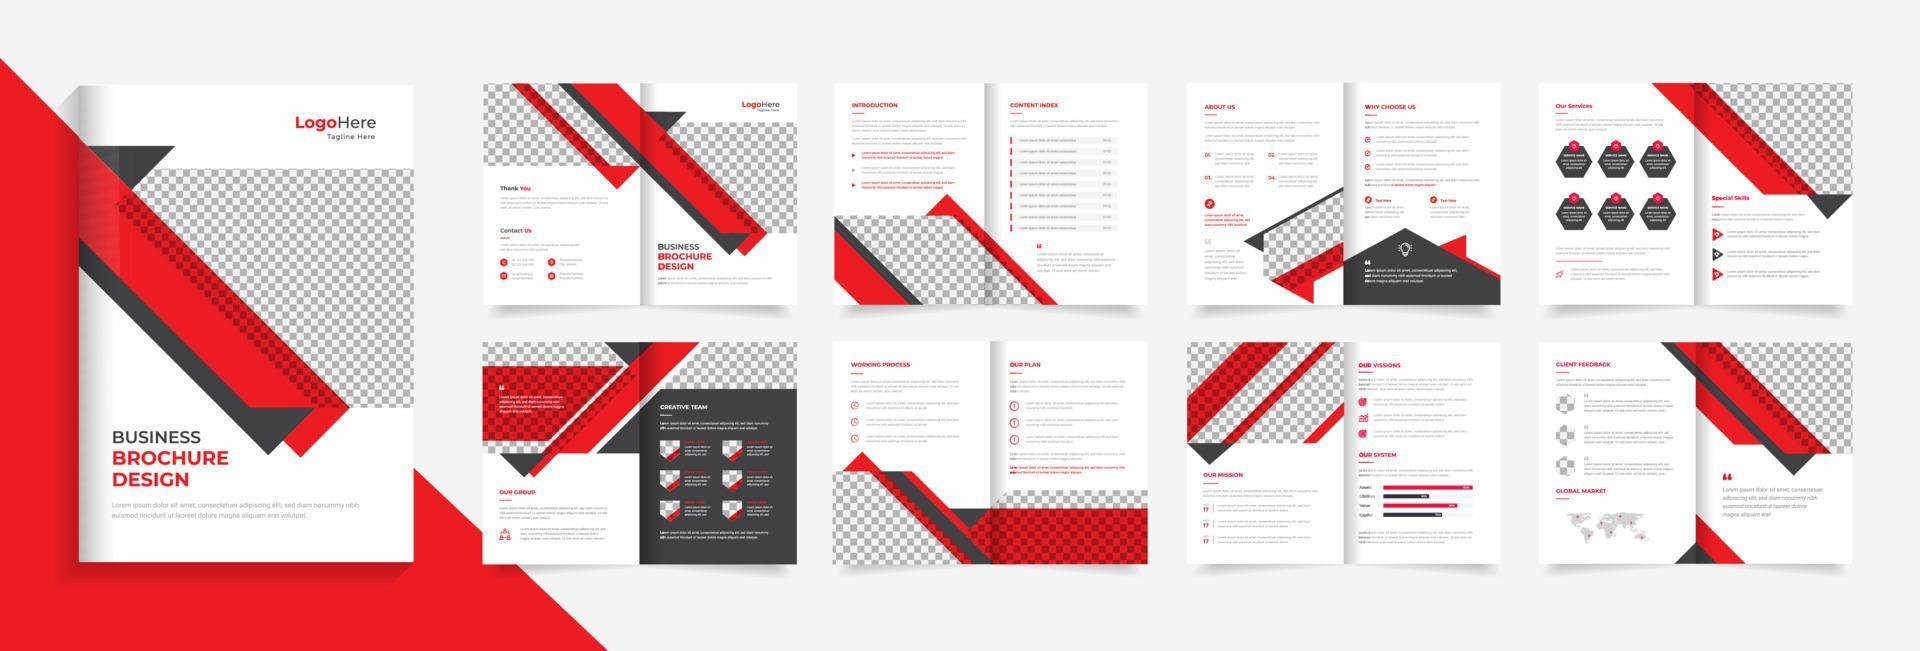 modèle de conception de brochure d'entreprise pour entreprise, profil d'entreprise, vecteur de rapport annuel